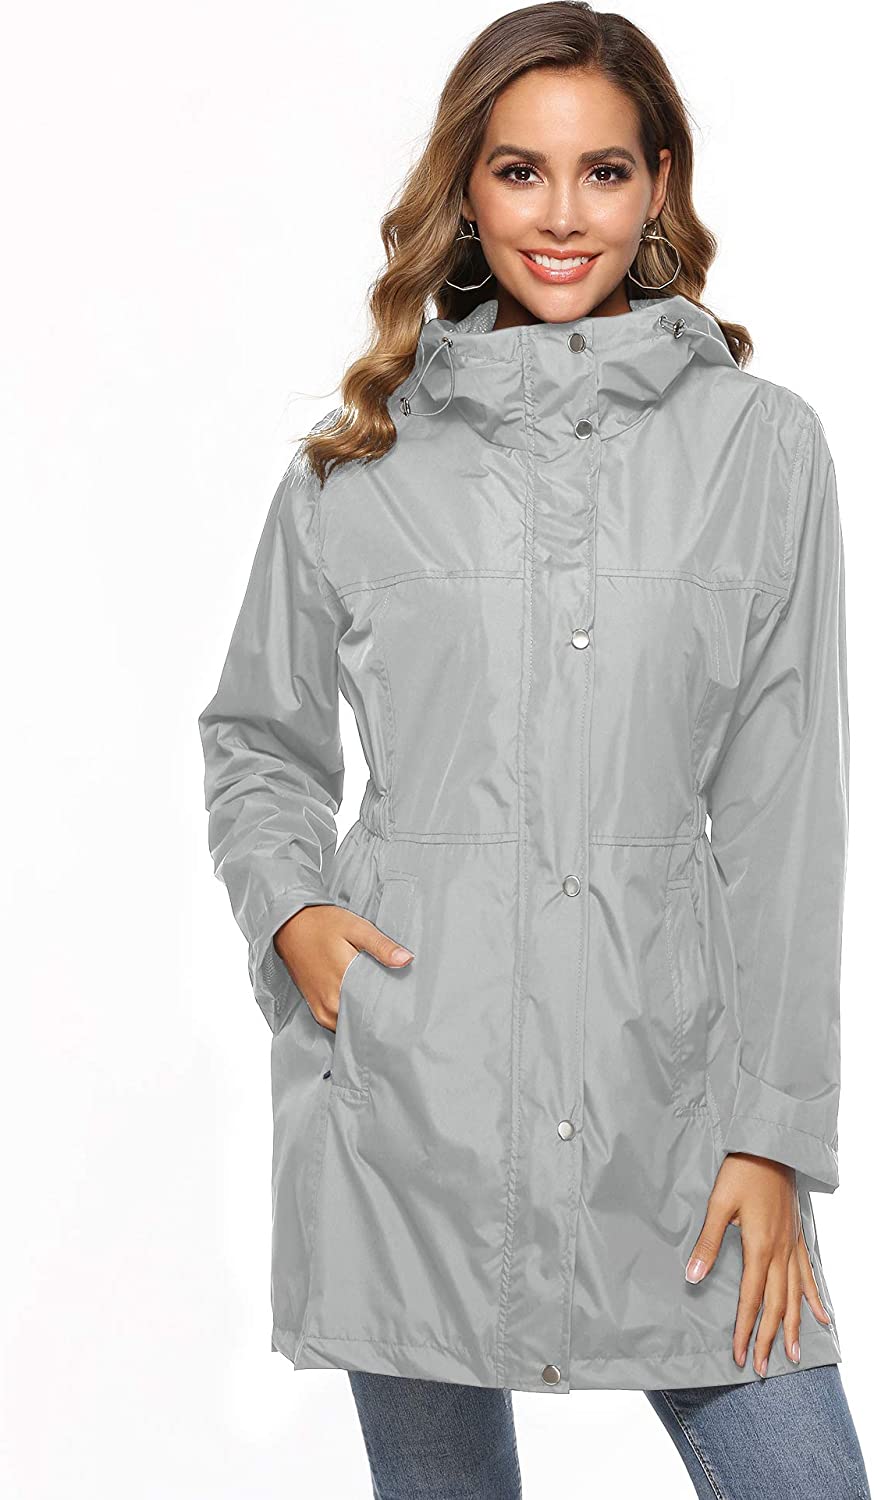 Avoogue Raincoat Women Waterproof Rain Jacket Outdoor Active Hooded ...